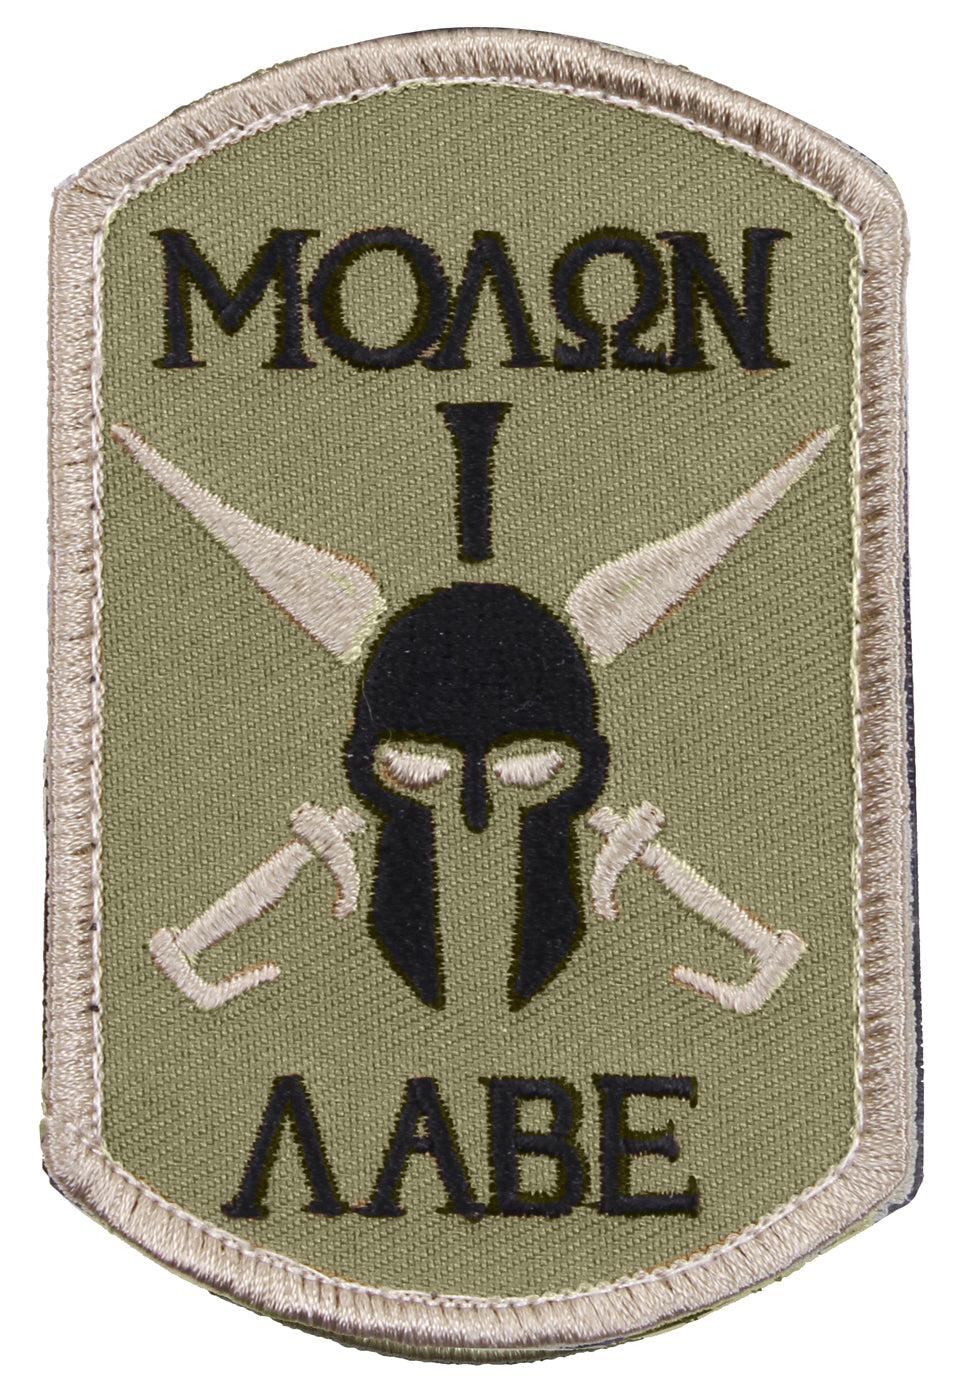 Milspec Molon Labe Spartan Morale Patch Morale Patches MilTac Tactical Military Outdoor Gear Australia